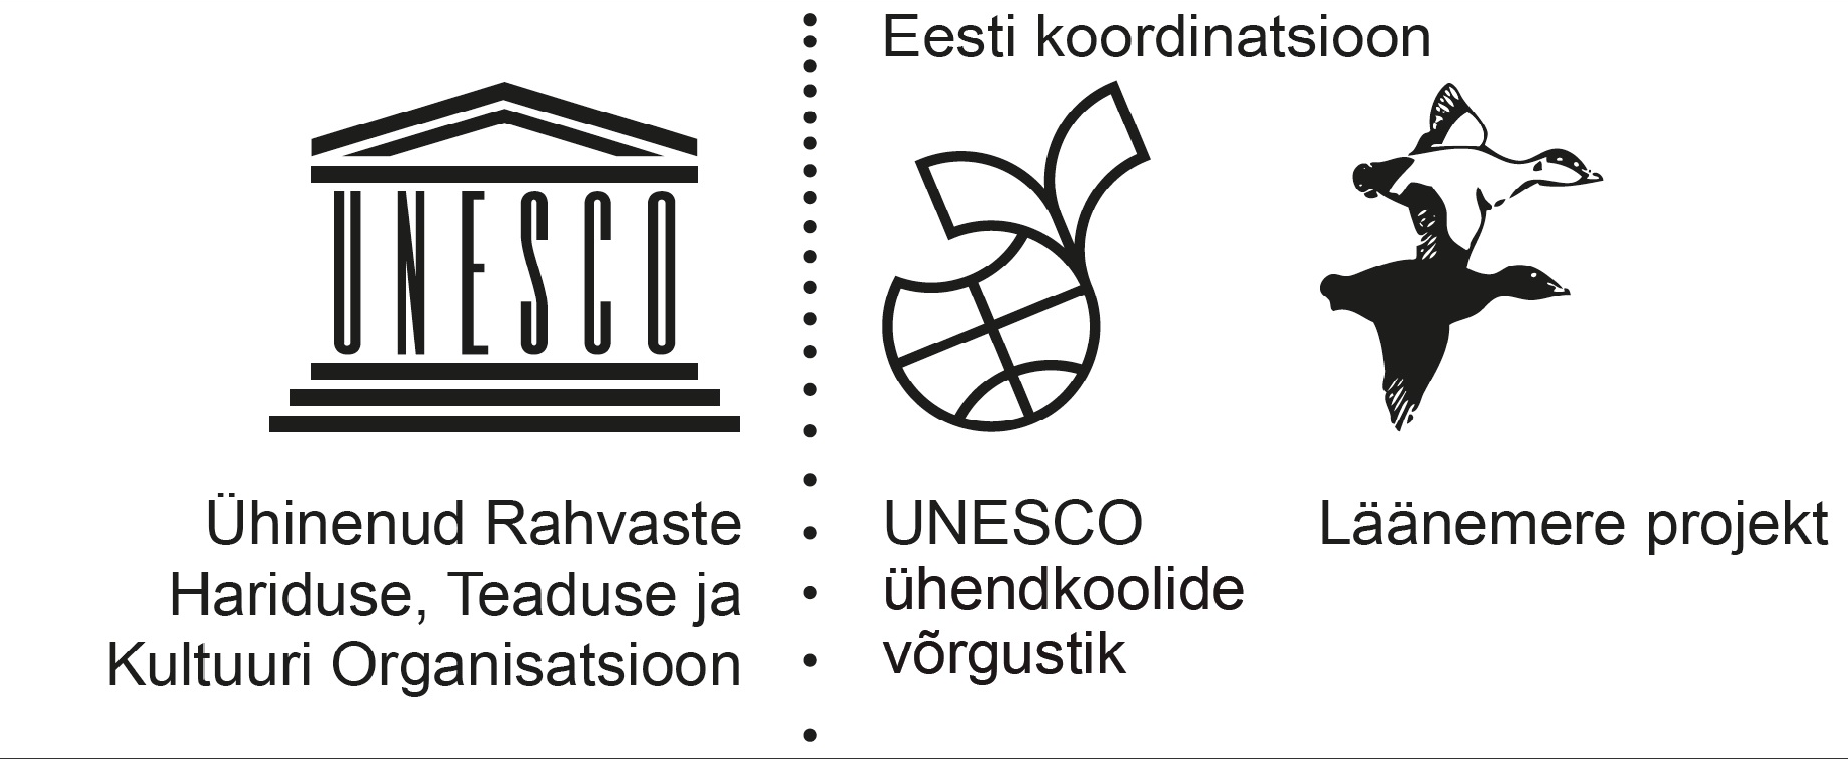 UNESCO ühendkoolide võrgustiku Läänemere Projekti (BSP) Eesti tegevuste koduleht